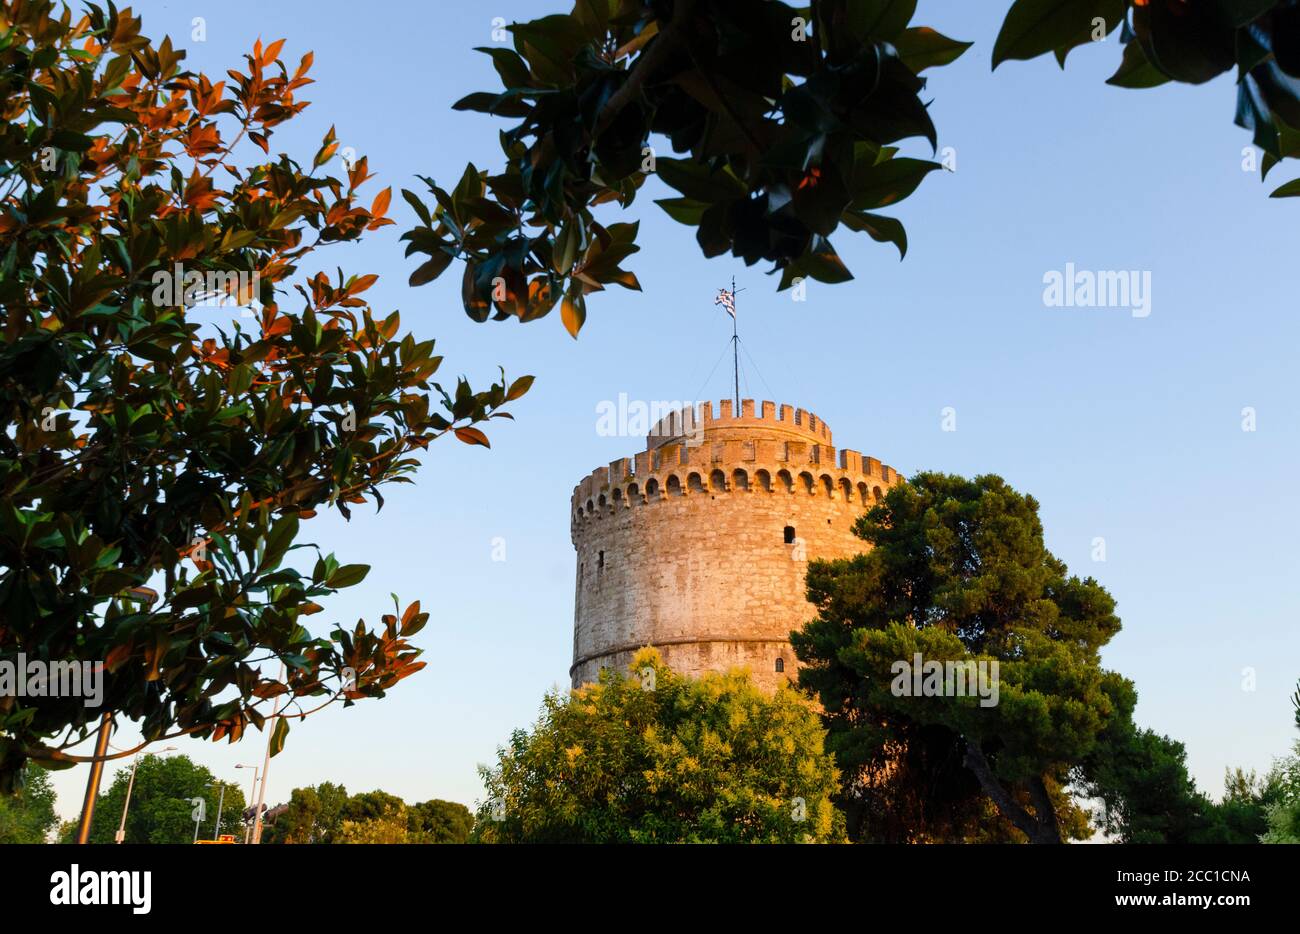 Vista generale della famosa Torre Bianca di Salonicco Macedonia Grecia. Questo punto di riferimento era un tempo una fortezza ottomana e una prigione - Foto: Geopix/A. Foto Stock